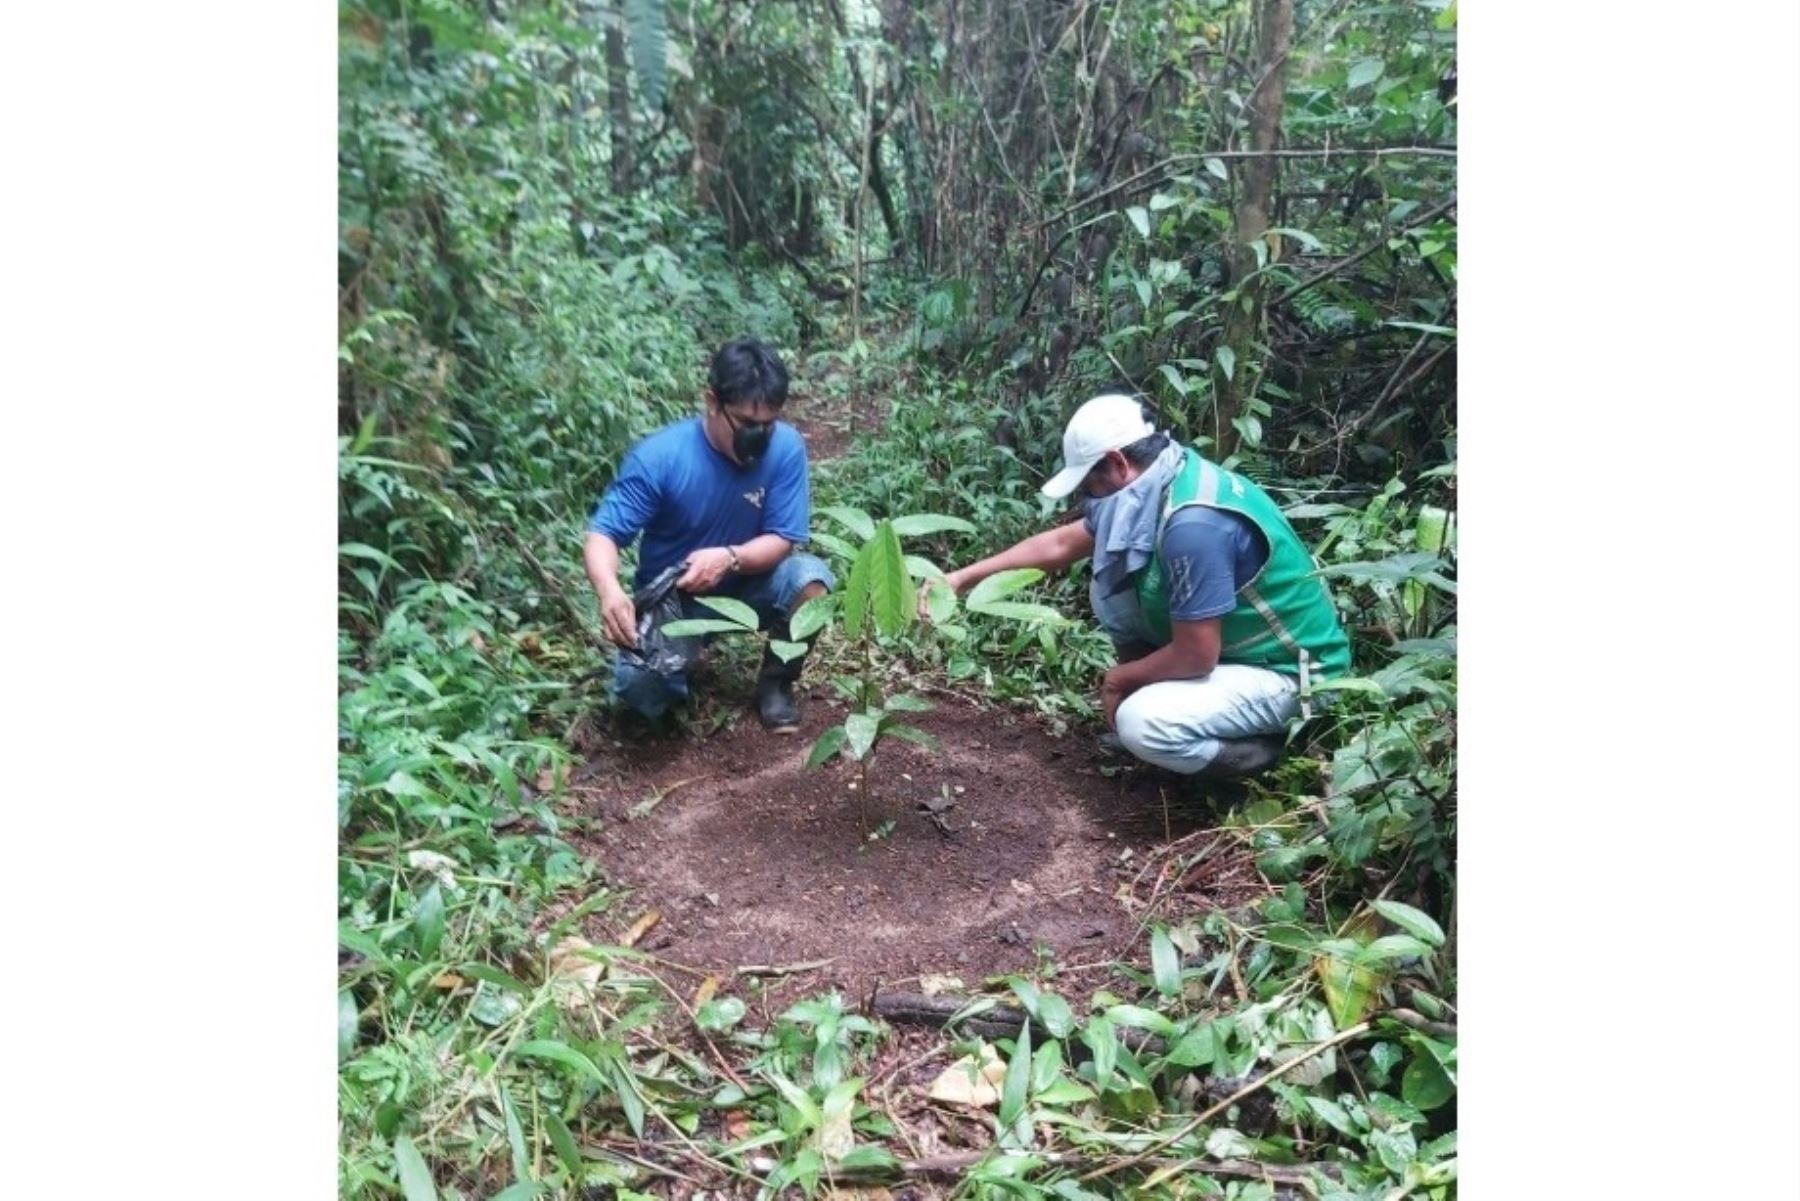 El proyecto Pedamaalc del Ministerio de Agricultura reforestará 655 hectáreas de bosques en terrenos degradados de la provincia de Alto Amazonas, región Loreto. ANDINA/Difusión